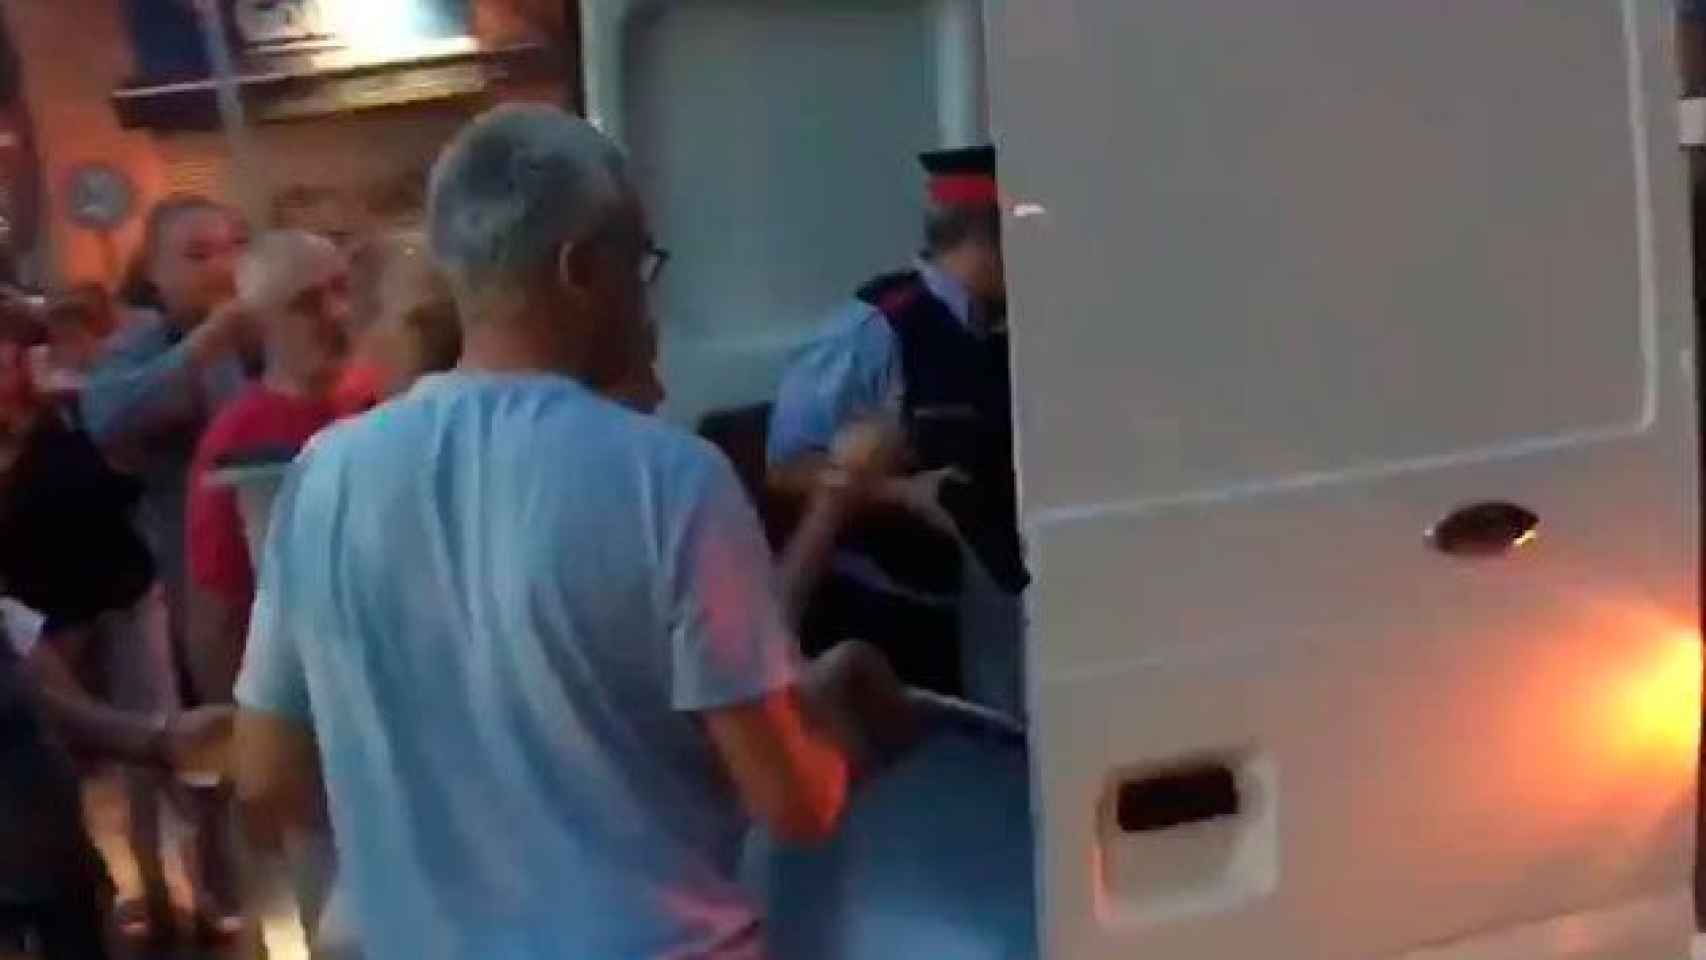 La pareja de mossos, cargando urnas en una furgoneta ante una multitud entregada / CG